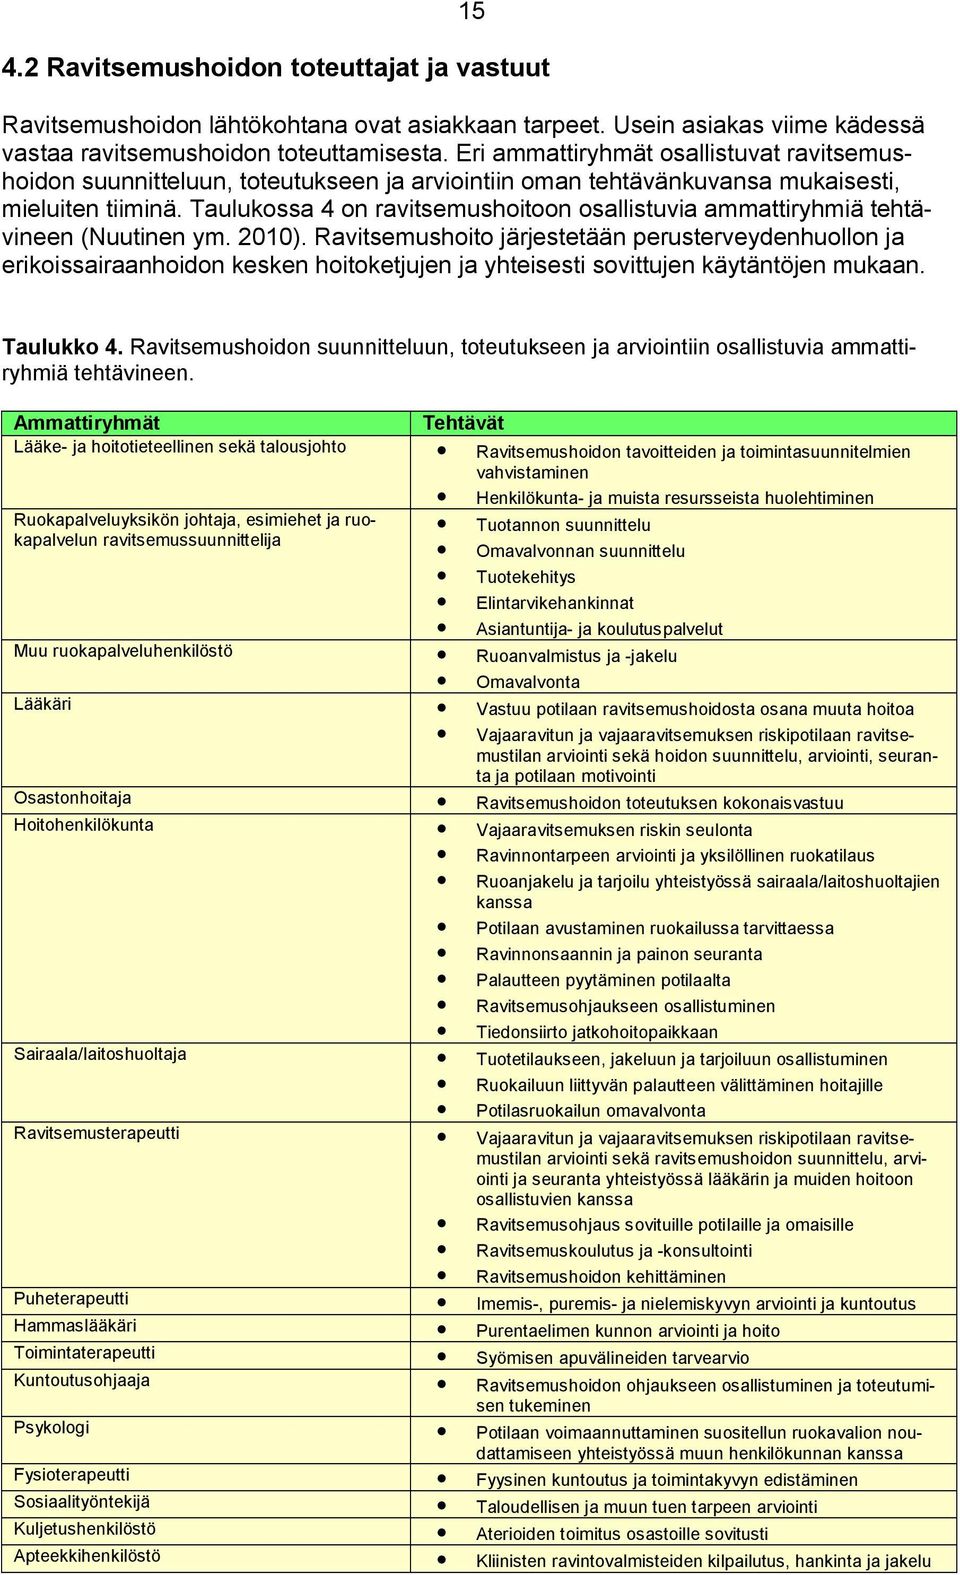 Taulukossa 4 on ravitsemushoitoon osallistuvia ammattiryhmiä tehtävineen (Nuutinen ym. 2010).